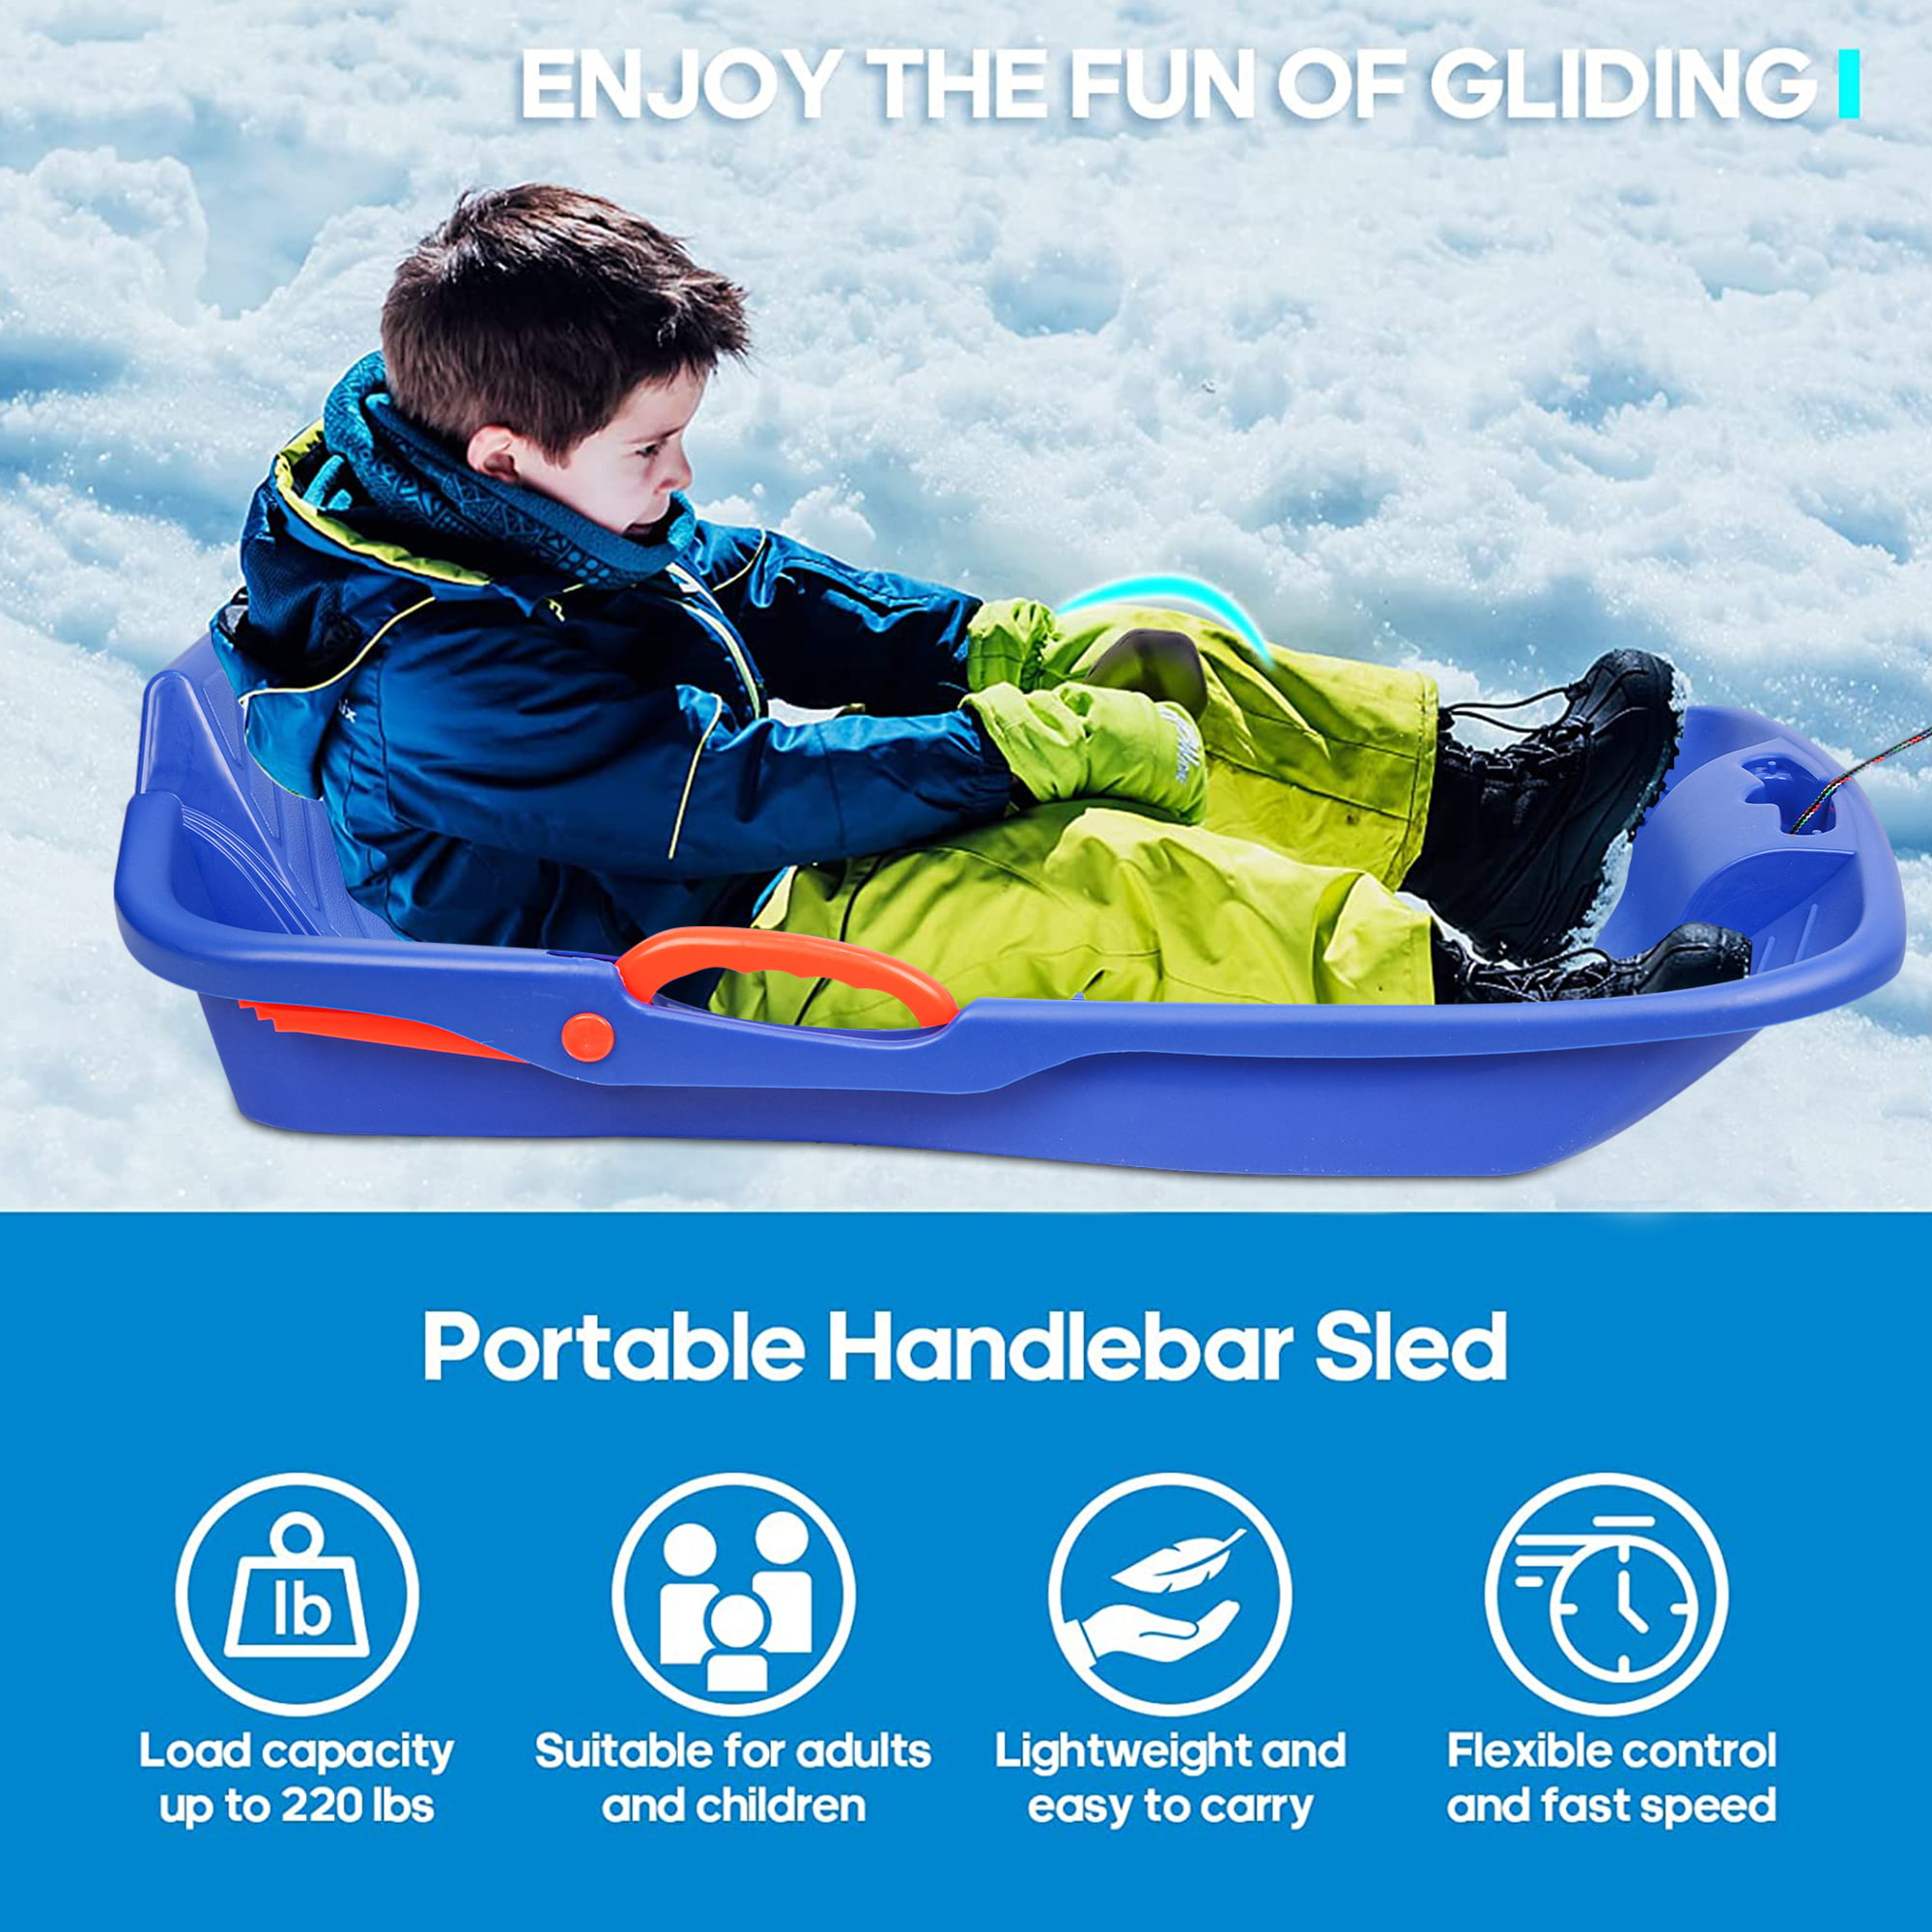 SPEED M sled children's sled snow glider 60 cm plastic snow slide